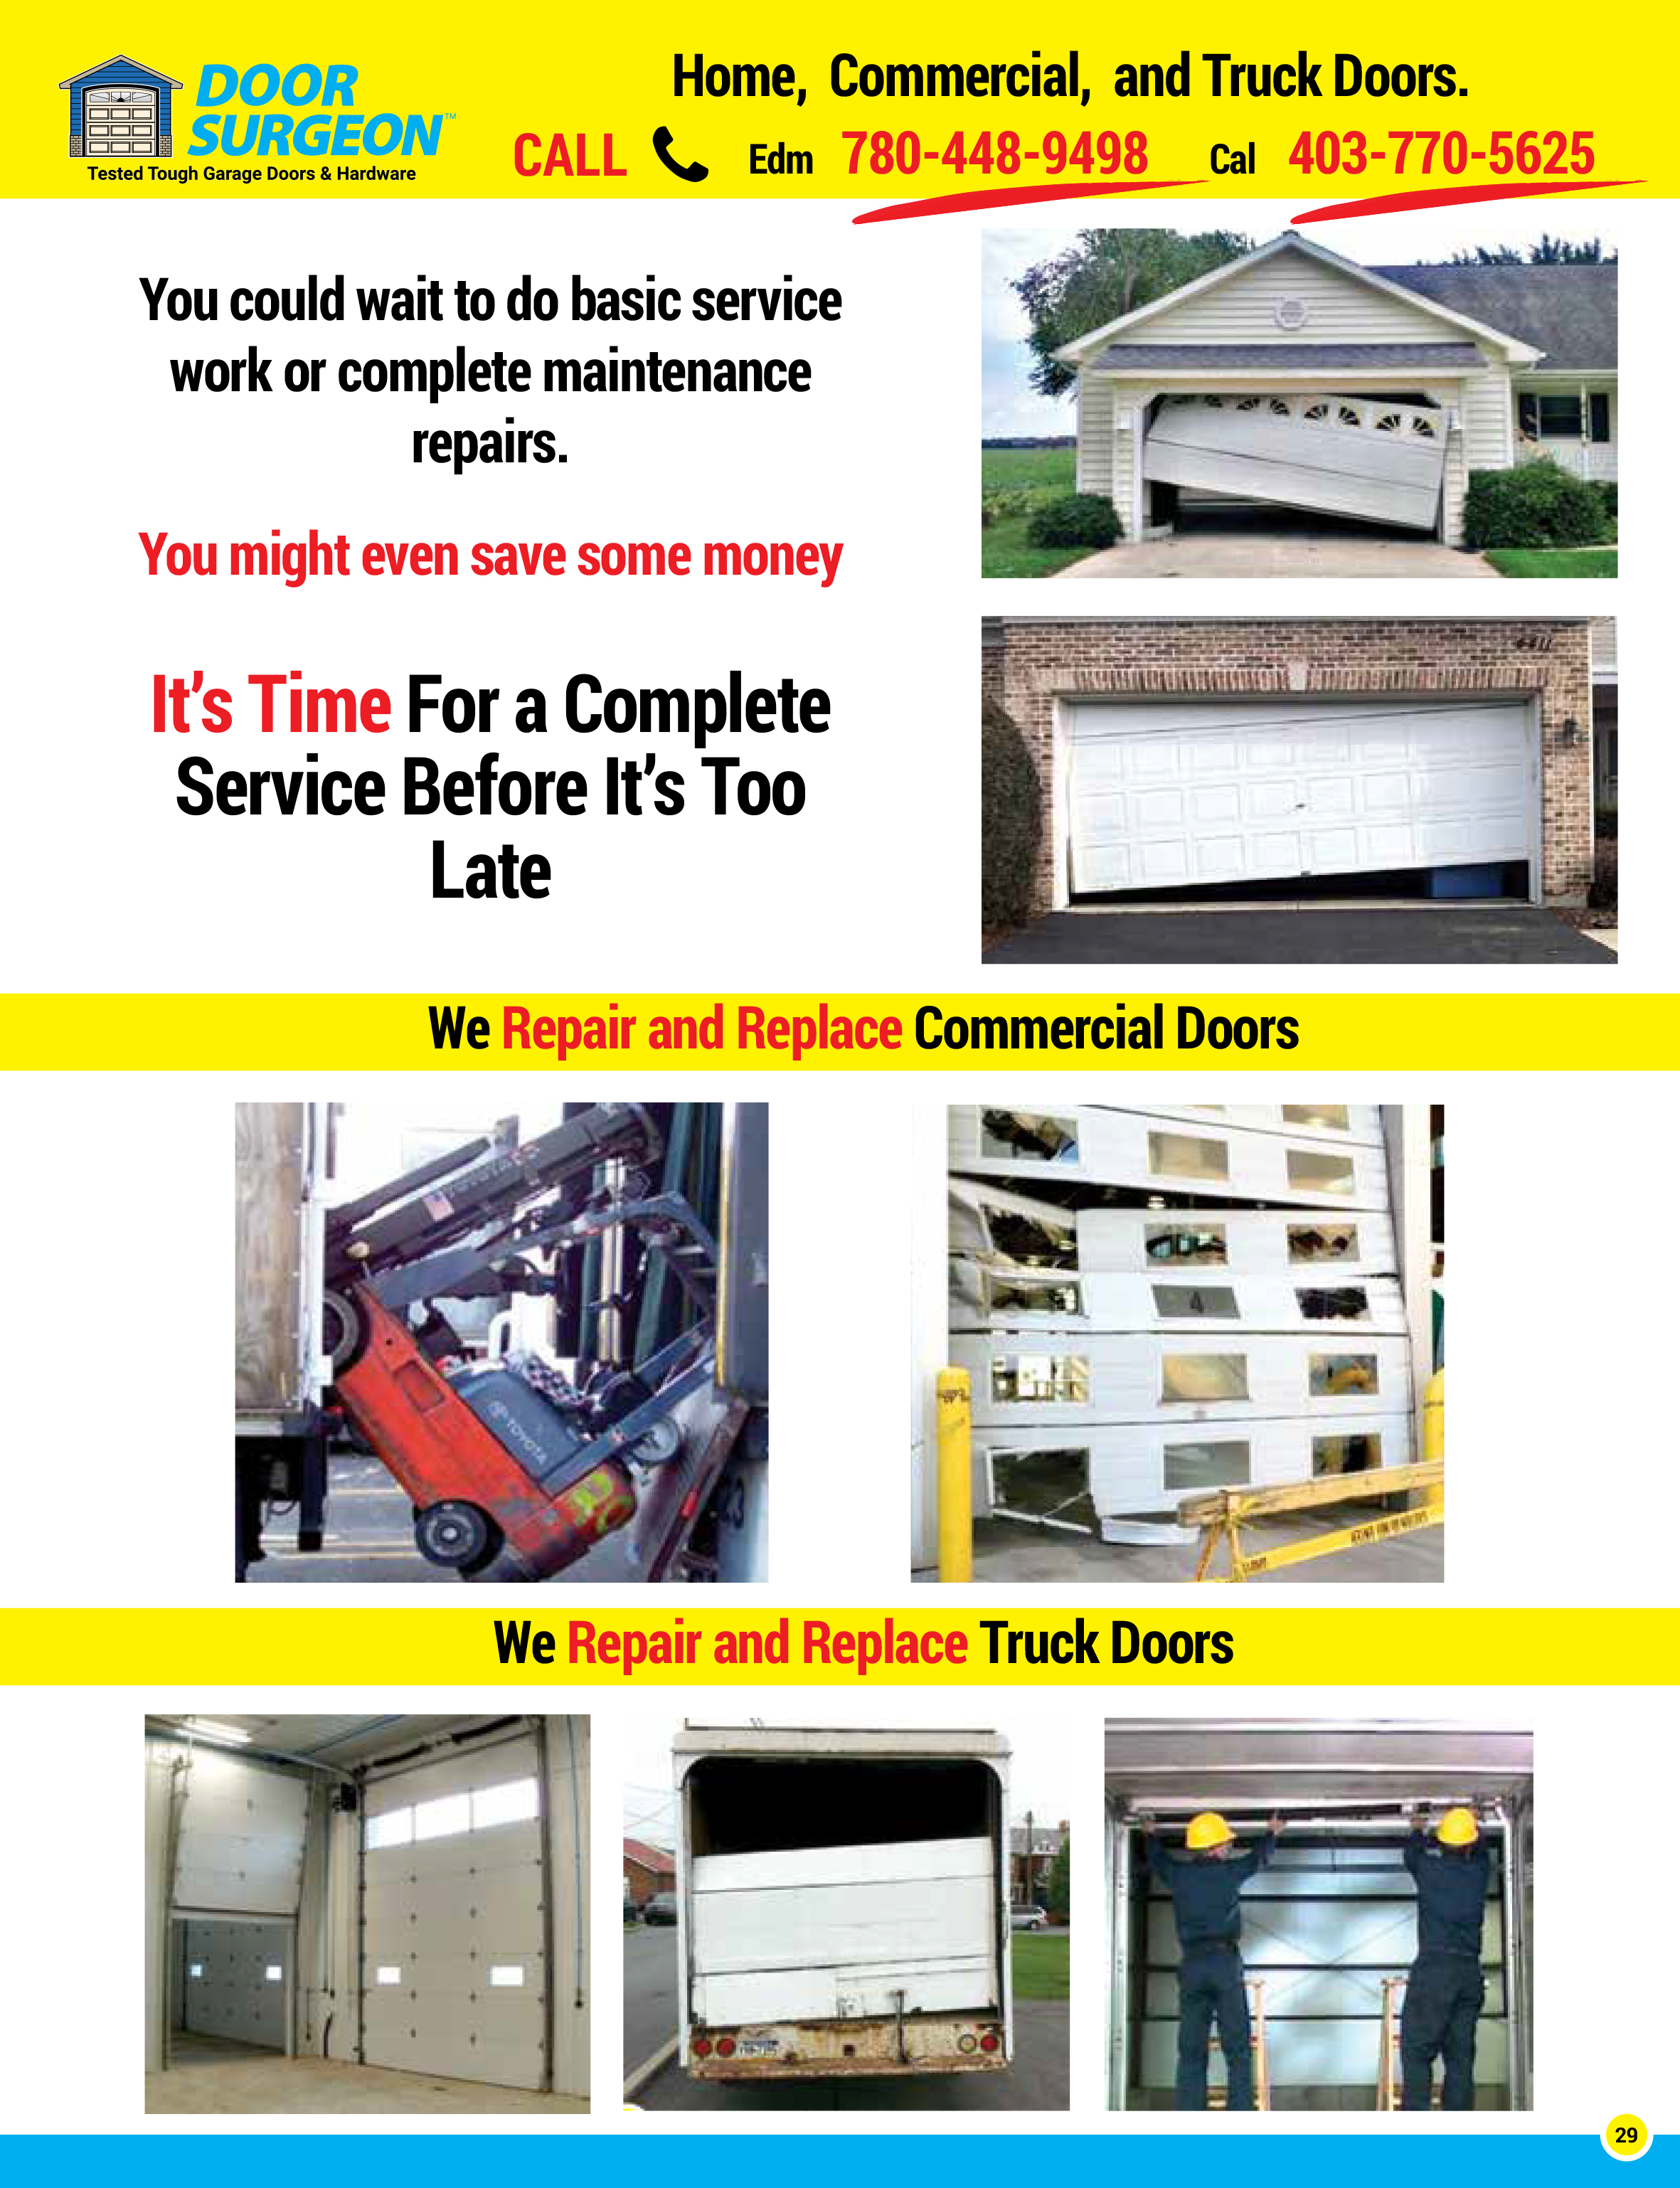 Garage door solutions for home commercial. Garage door repairs, replacement parts and new garage doors.